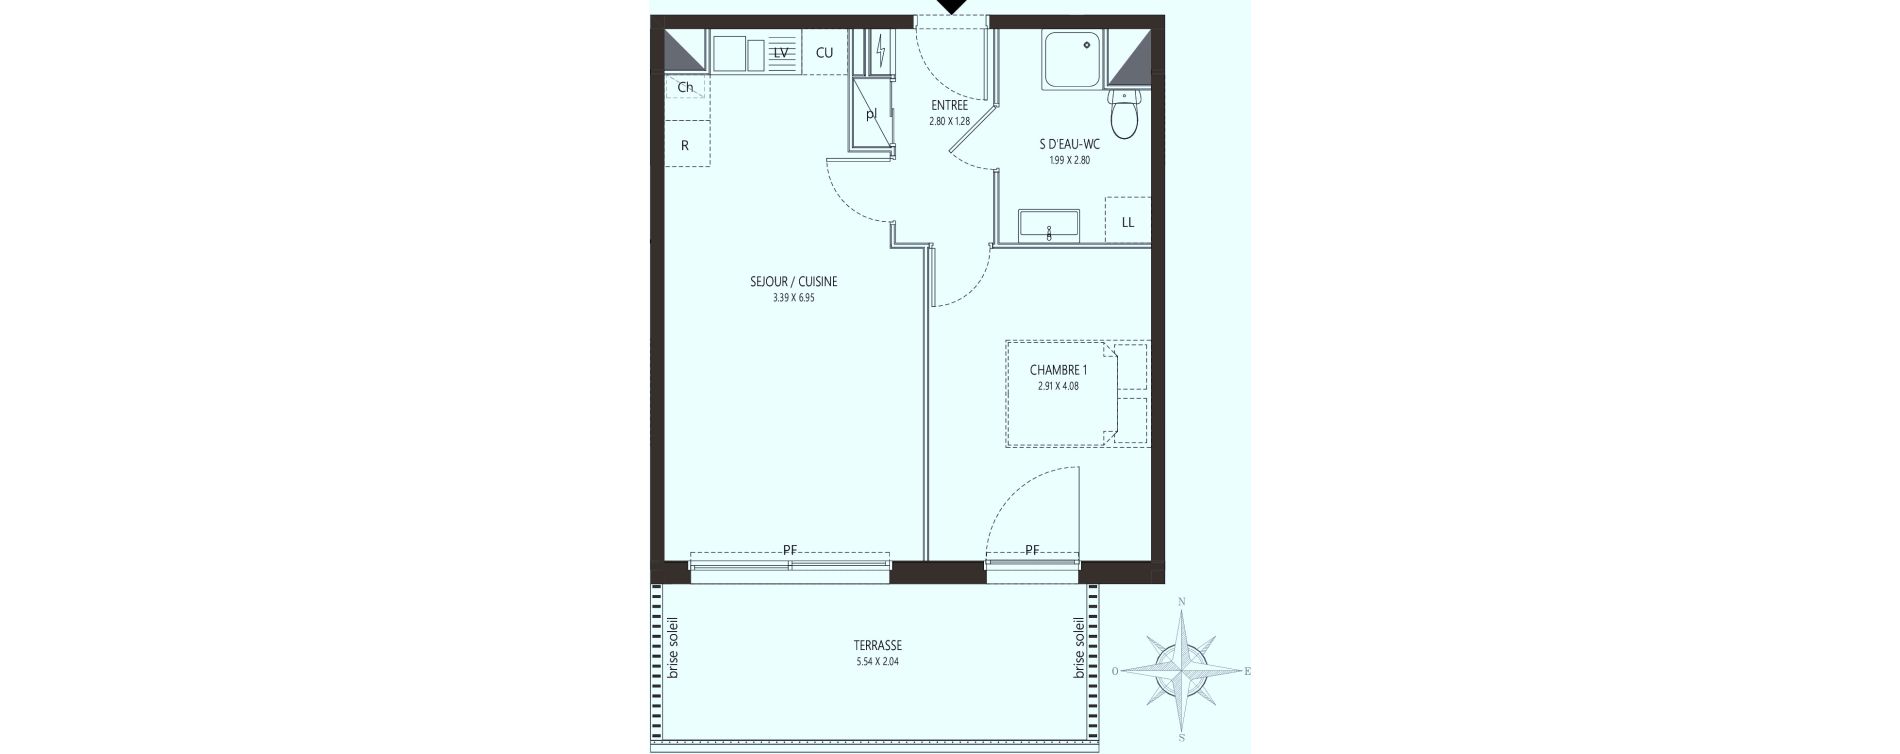  Appartement  T2 de 42 10 m2  RDC S Les Terrasses  Nice ref 172